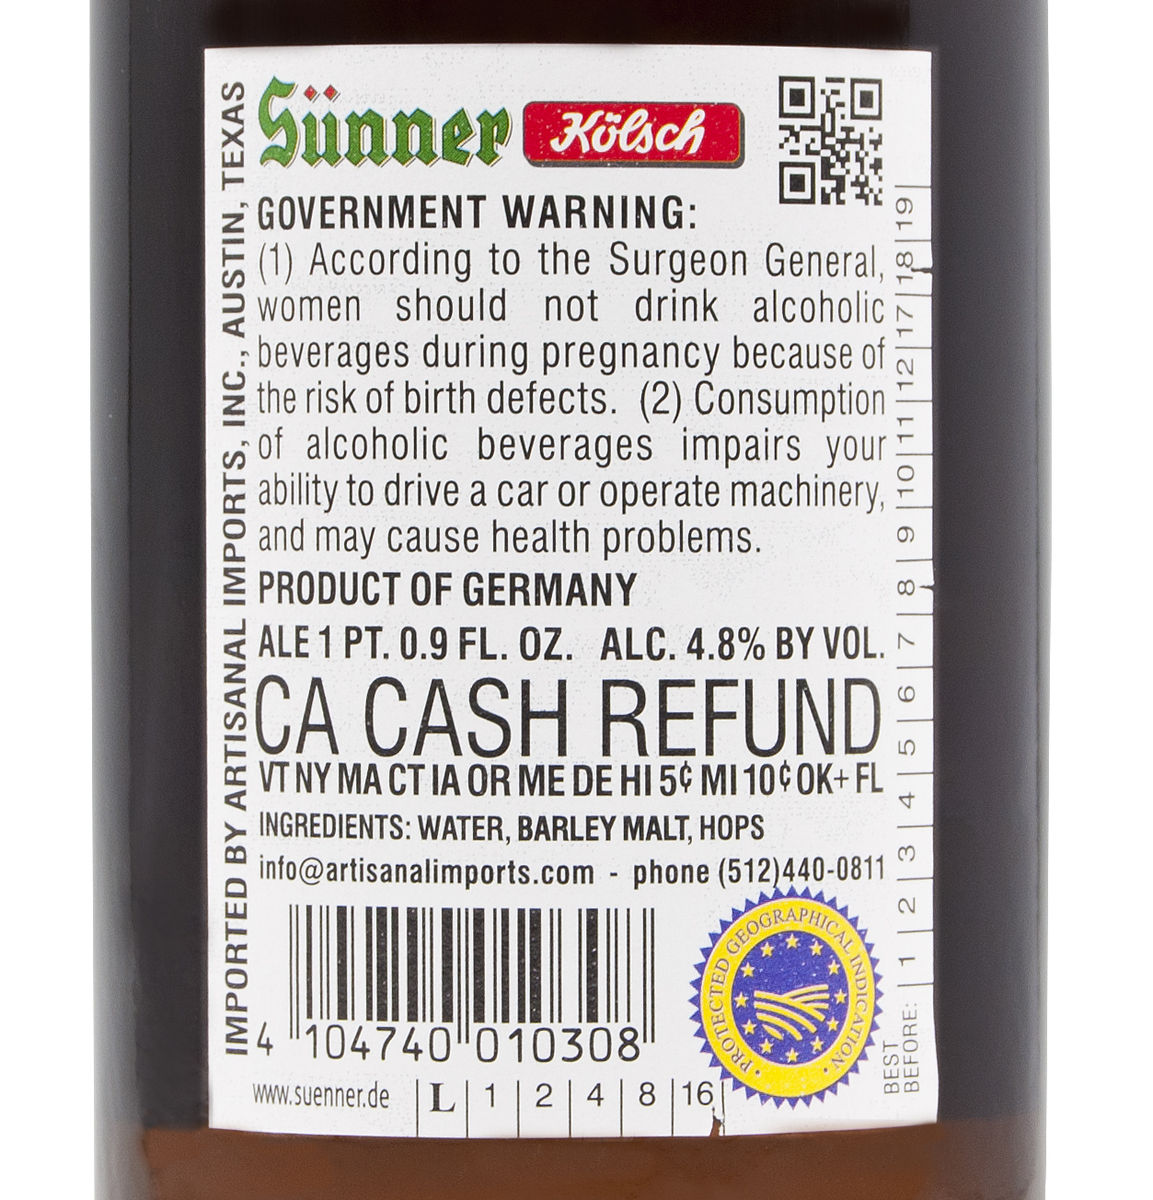 sunner kolsch bottled on label